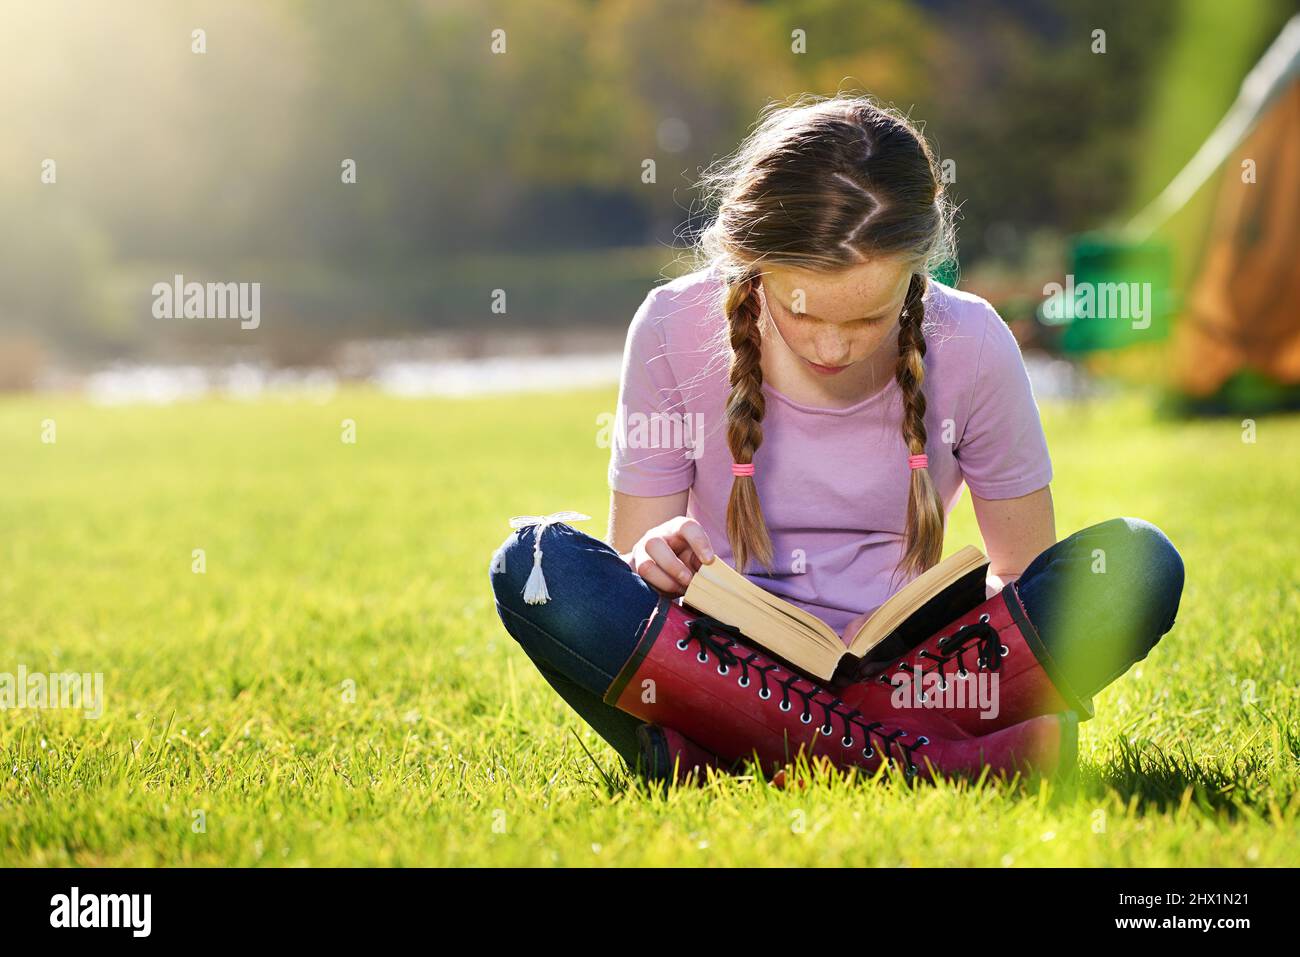 Continuez à apprendre tout l'été. Photo d'une adolescente se détendant avec un livre sur l'herbe. Banque D'Images